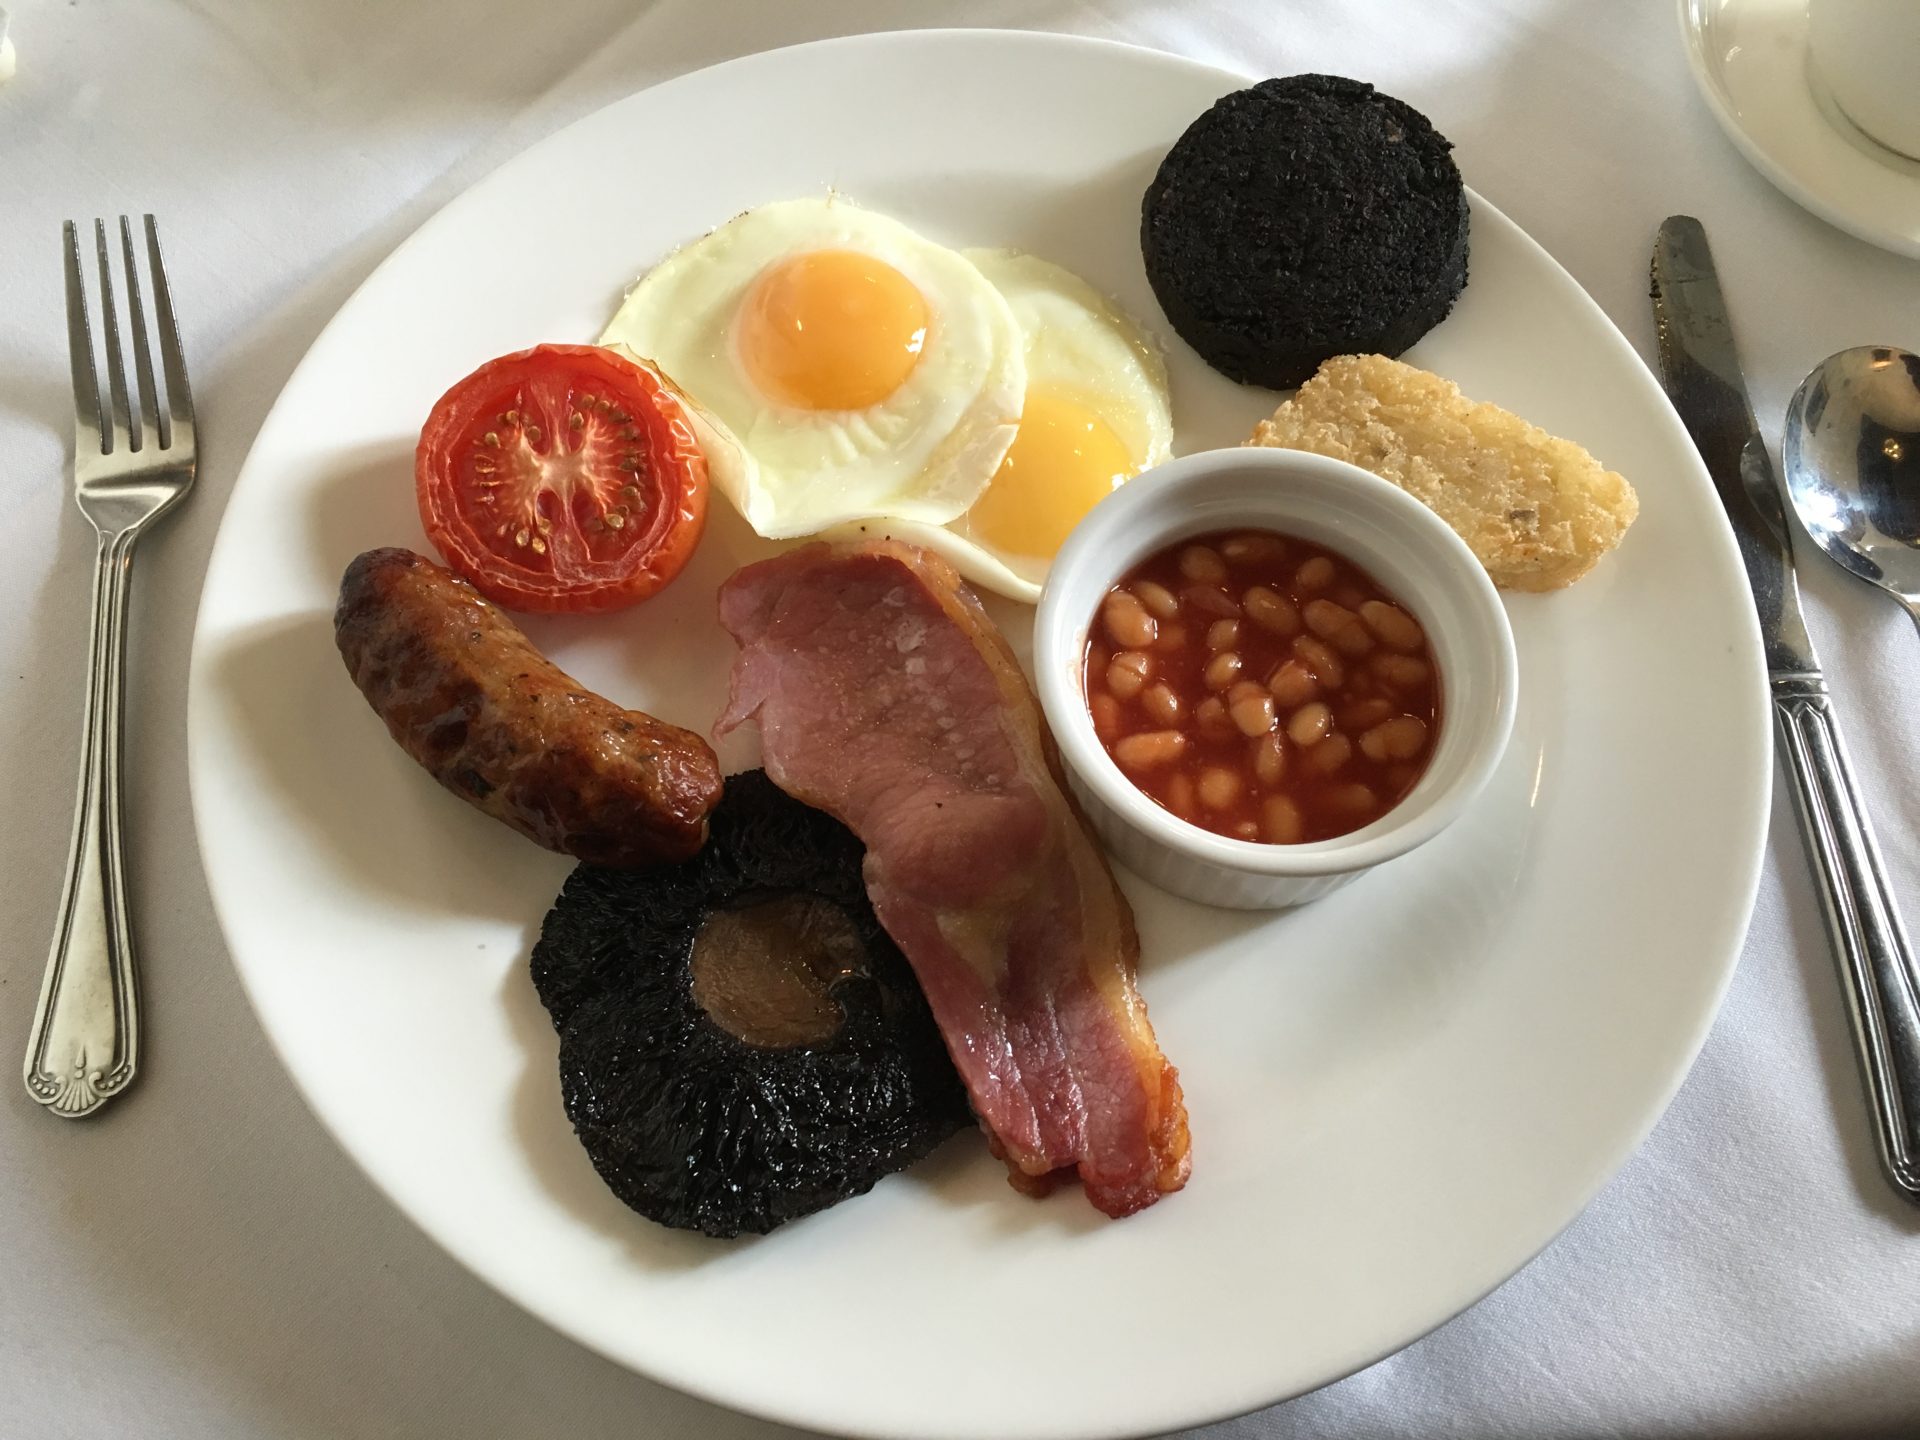 Ettington Park hotel breakfast - cooked breakfast